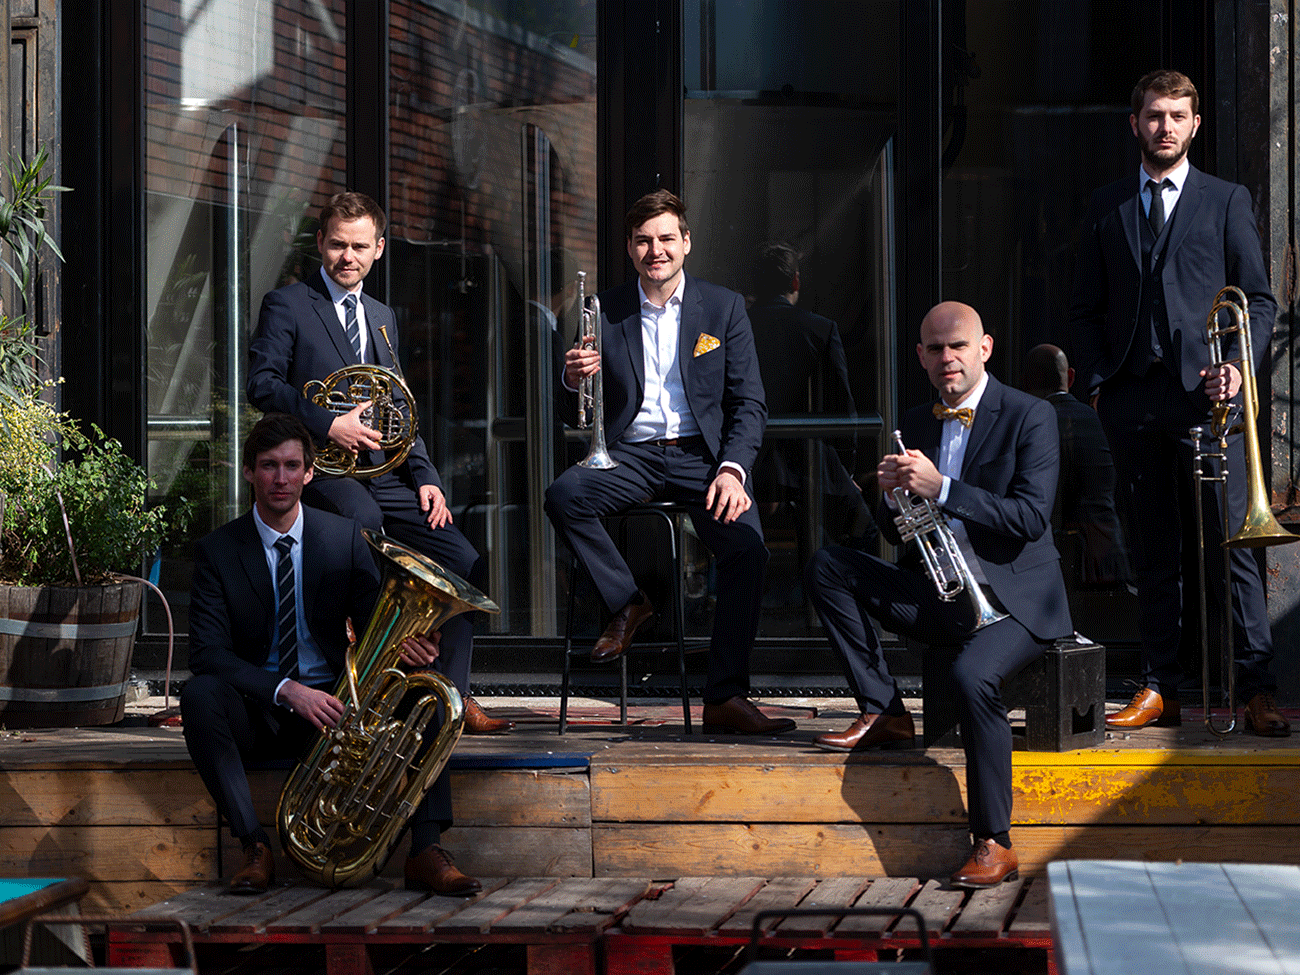 Local Brass Quintet © Ugo ponte